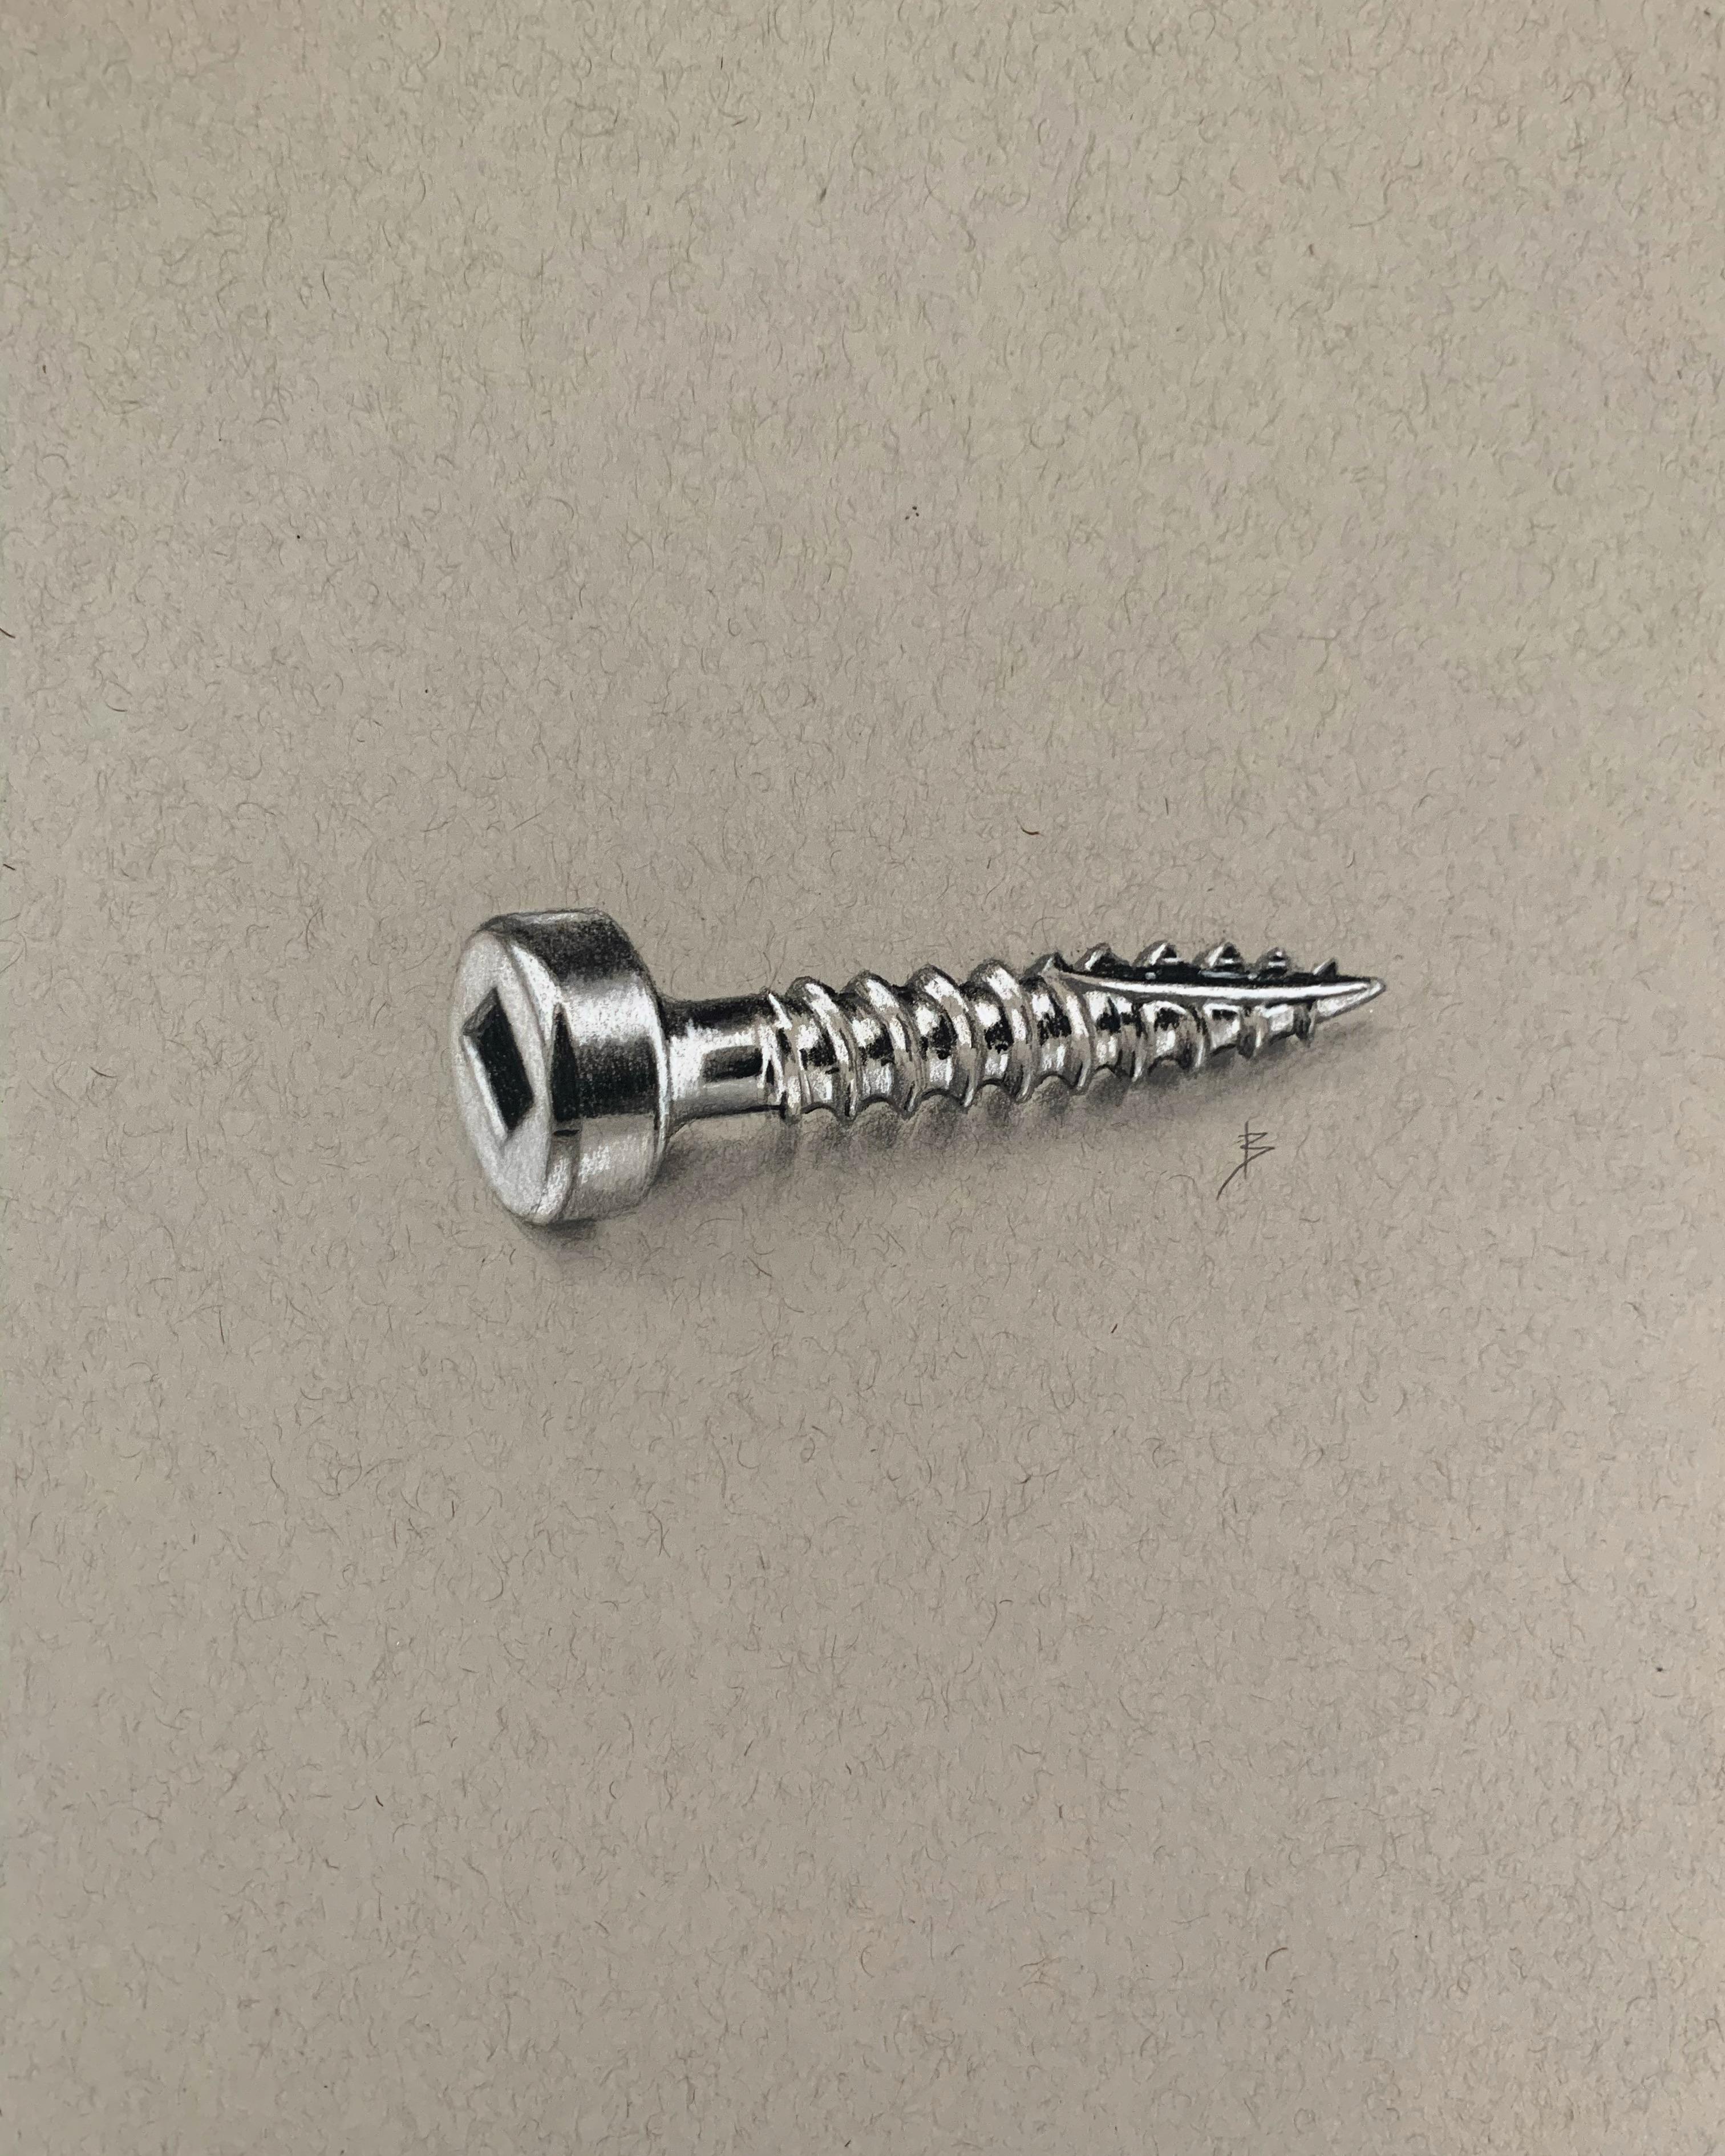 I drew a screw